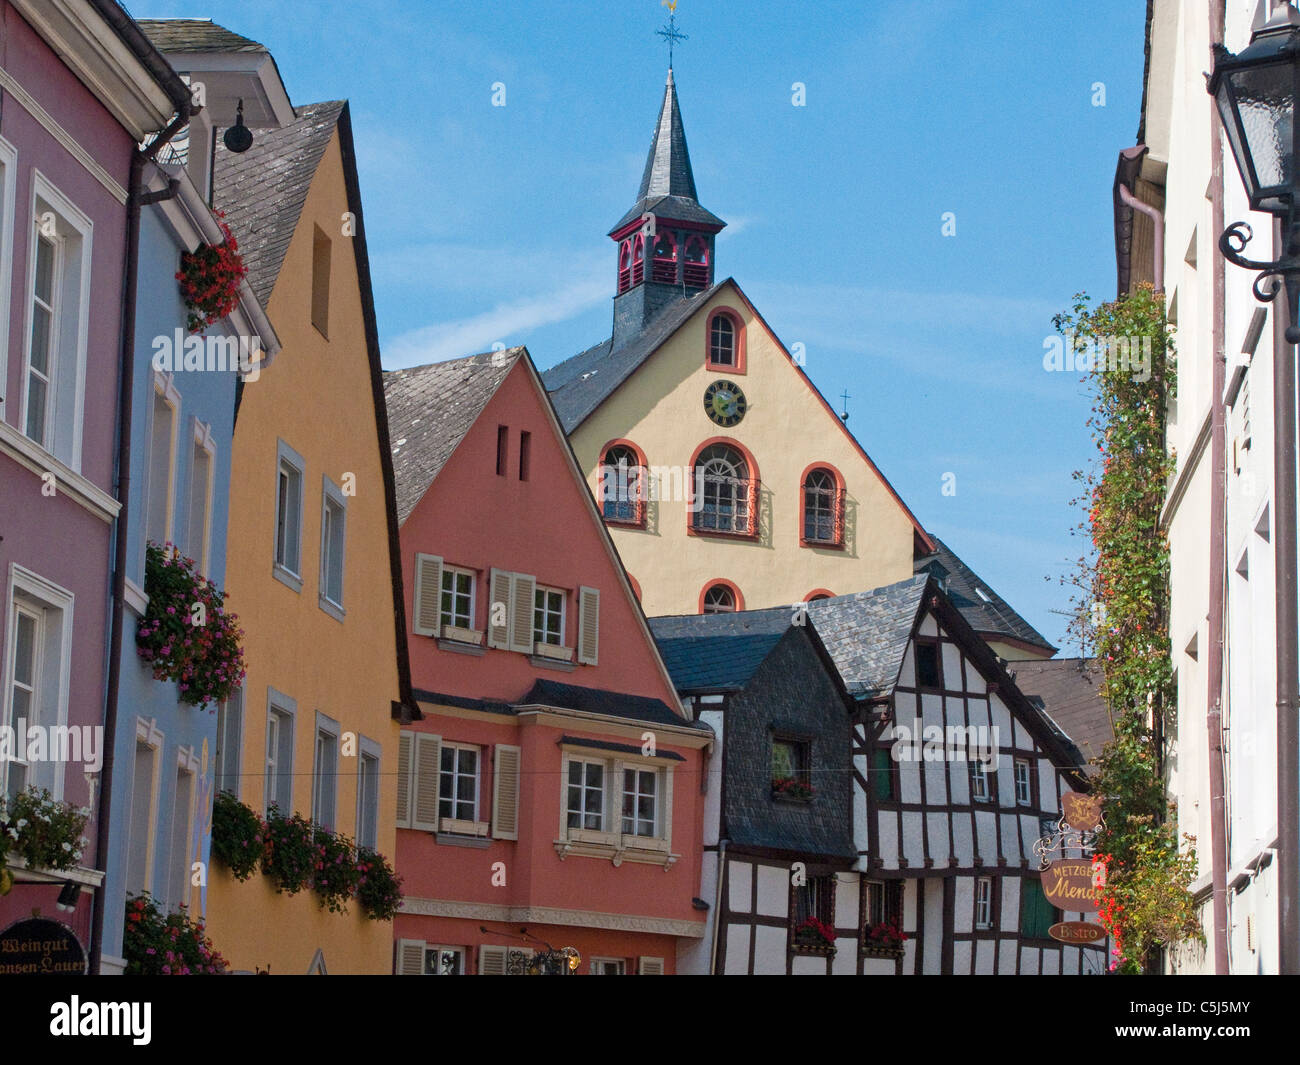 Bunte Haeuser in der Altstadt, historischer Stadtkern, Bernkastel-Kues, Mosel,  Houses in the old town, Moselle Stock Photo